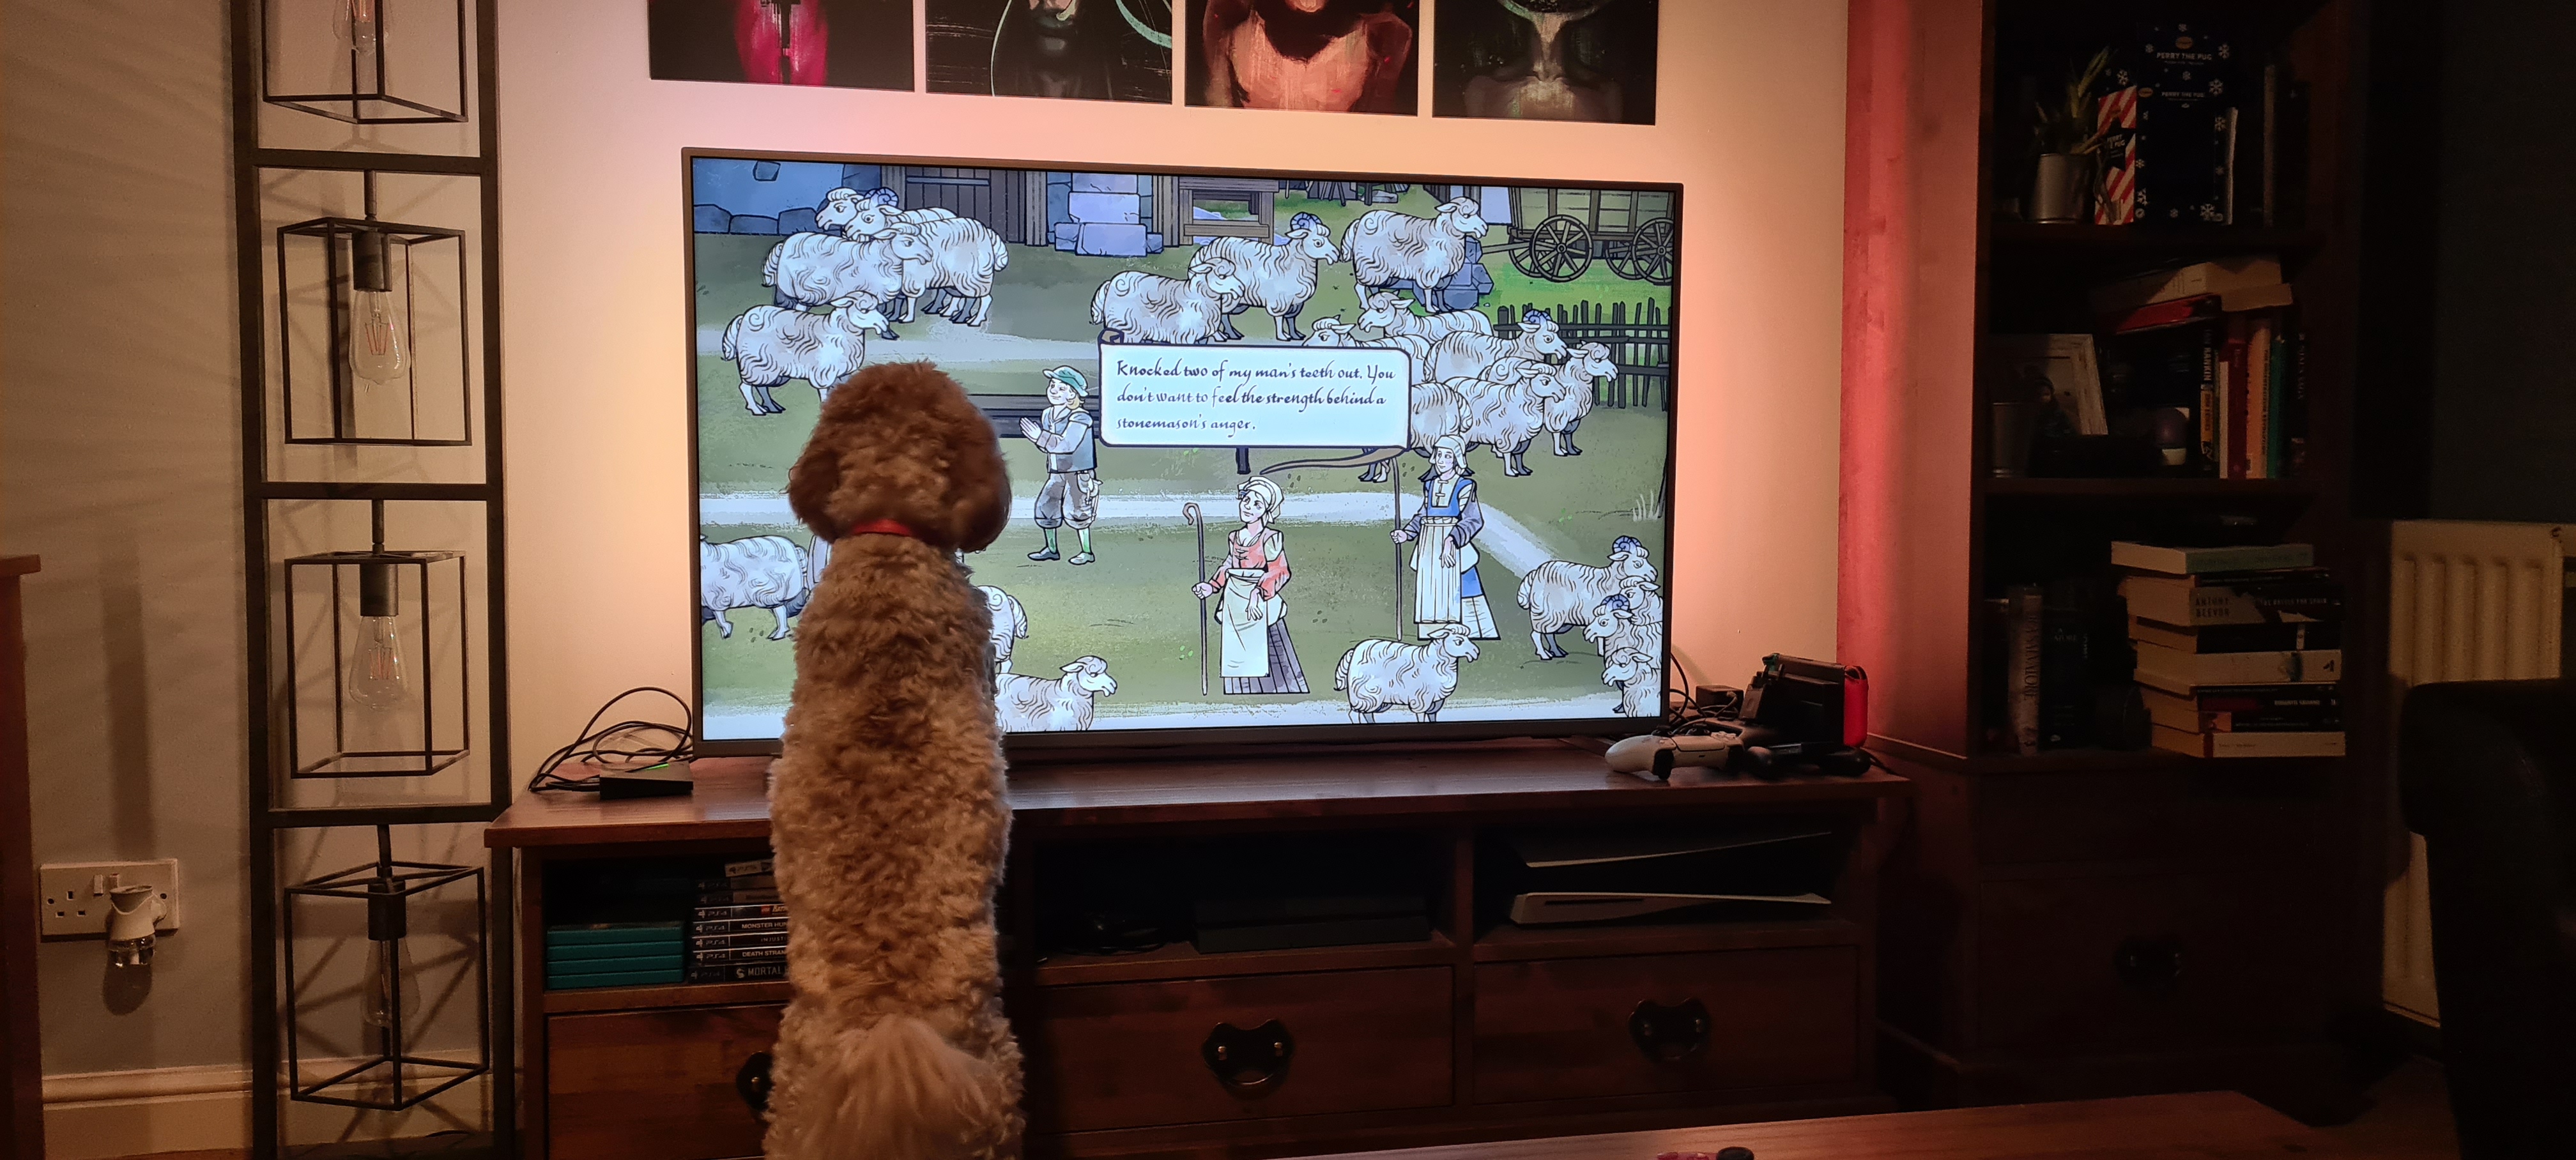 Un cockapoo regardant une télé